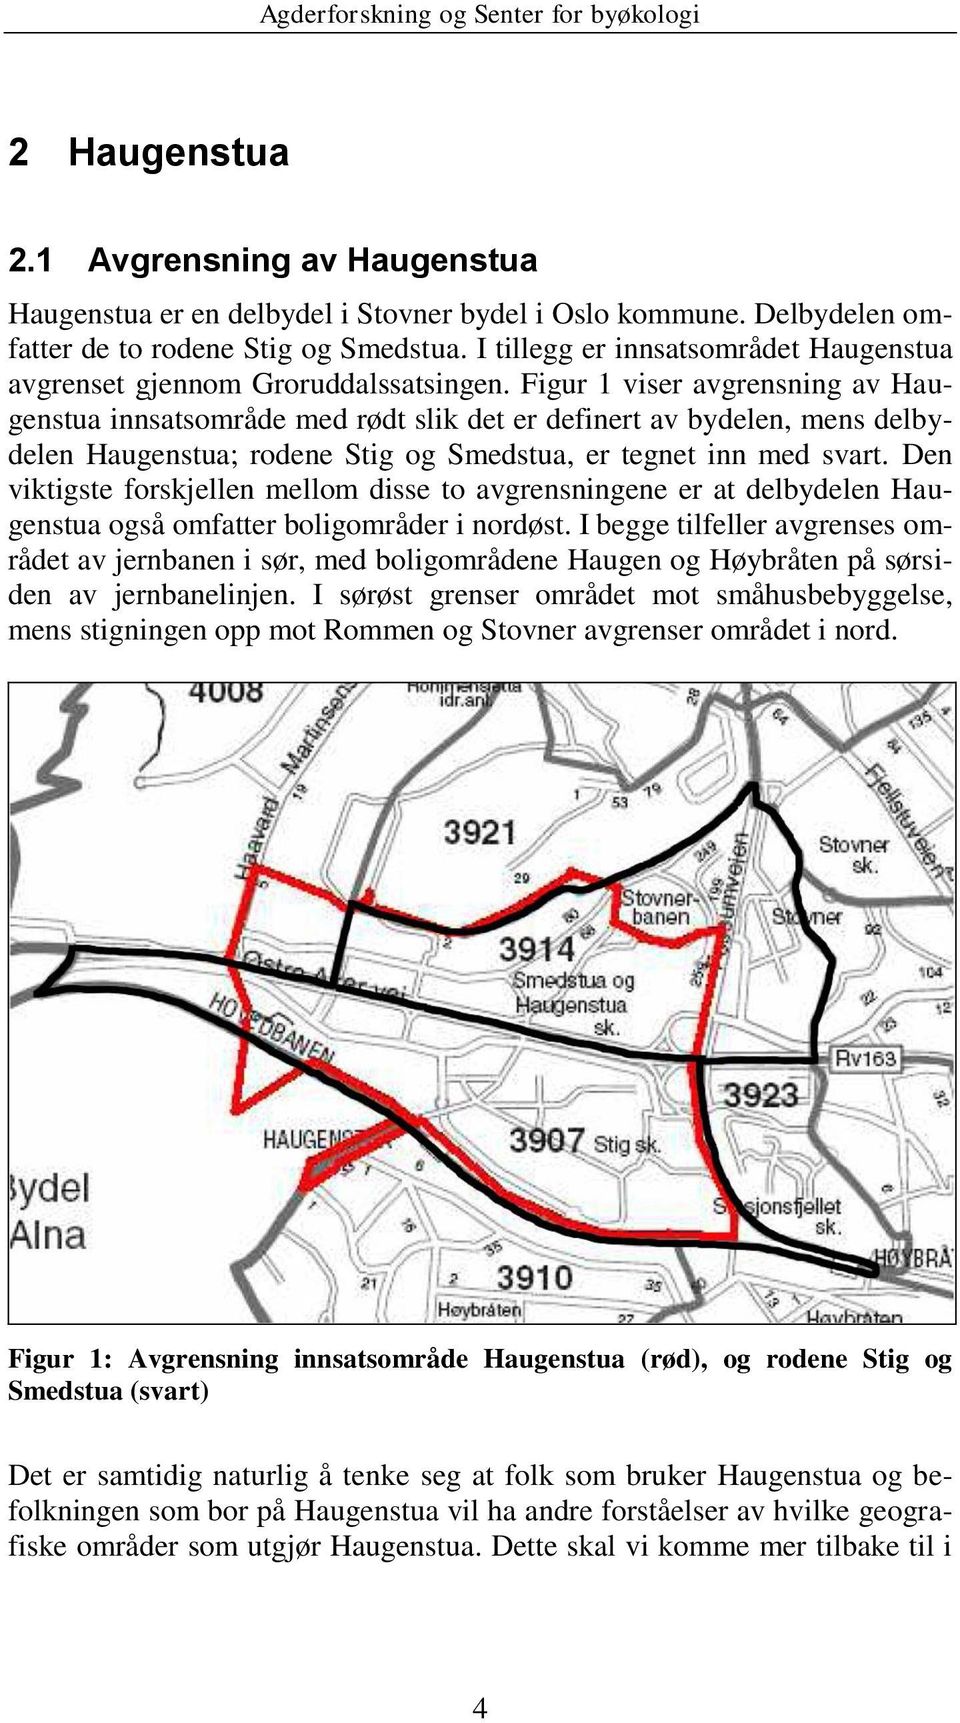 Figur 1 viser avgrensning av Haugenstua innsatsområde med rødt slik det er definert av bydelen, mens delbydelen Haugenstua; rodene Stig og Smedstua, er tegnet inn med svart.